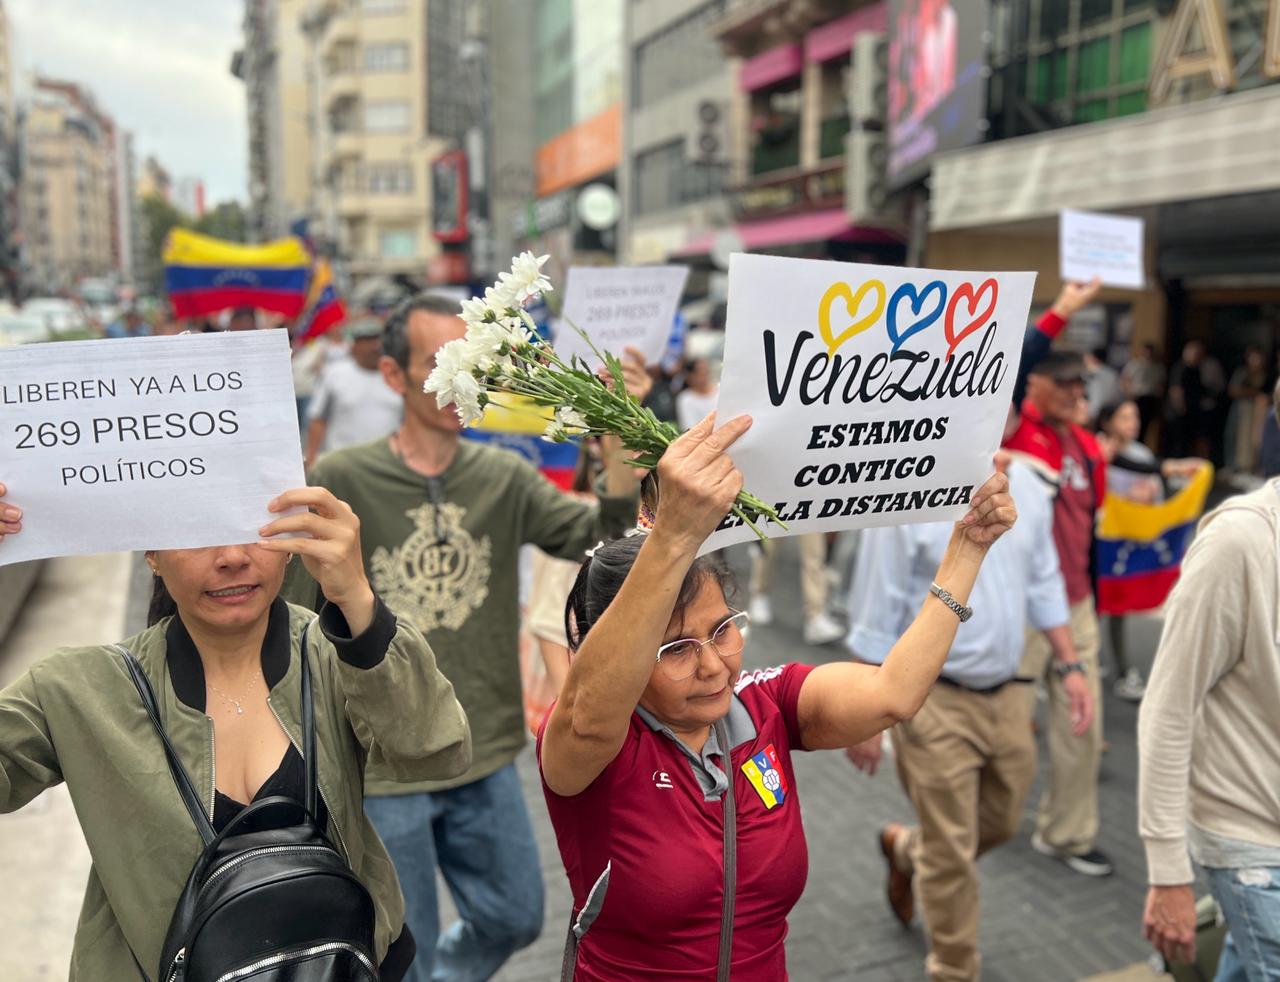 Cultura y gastronomía como punto de encuentro electoral de venezolanos en Argentina